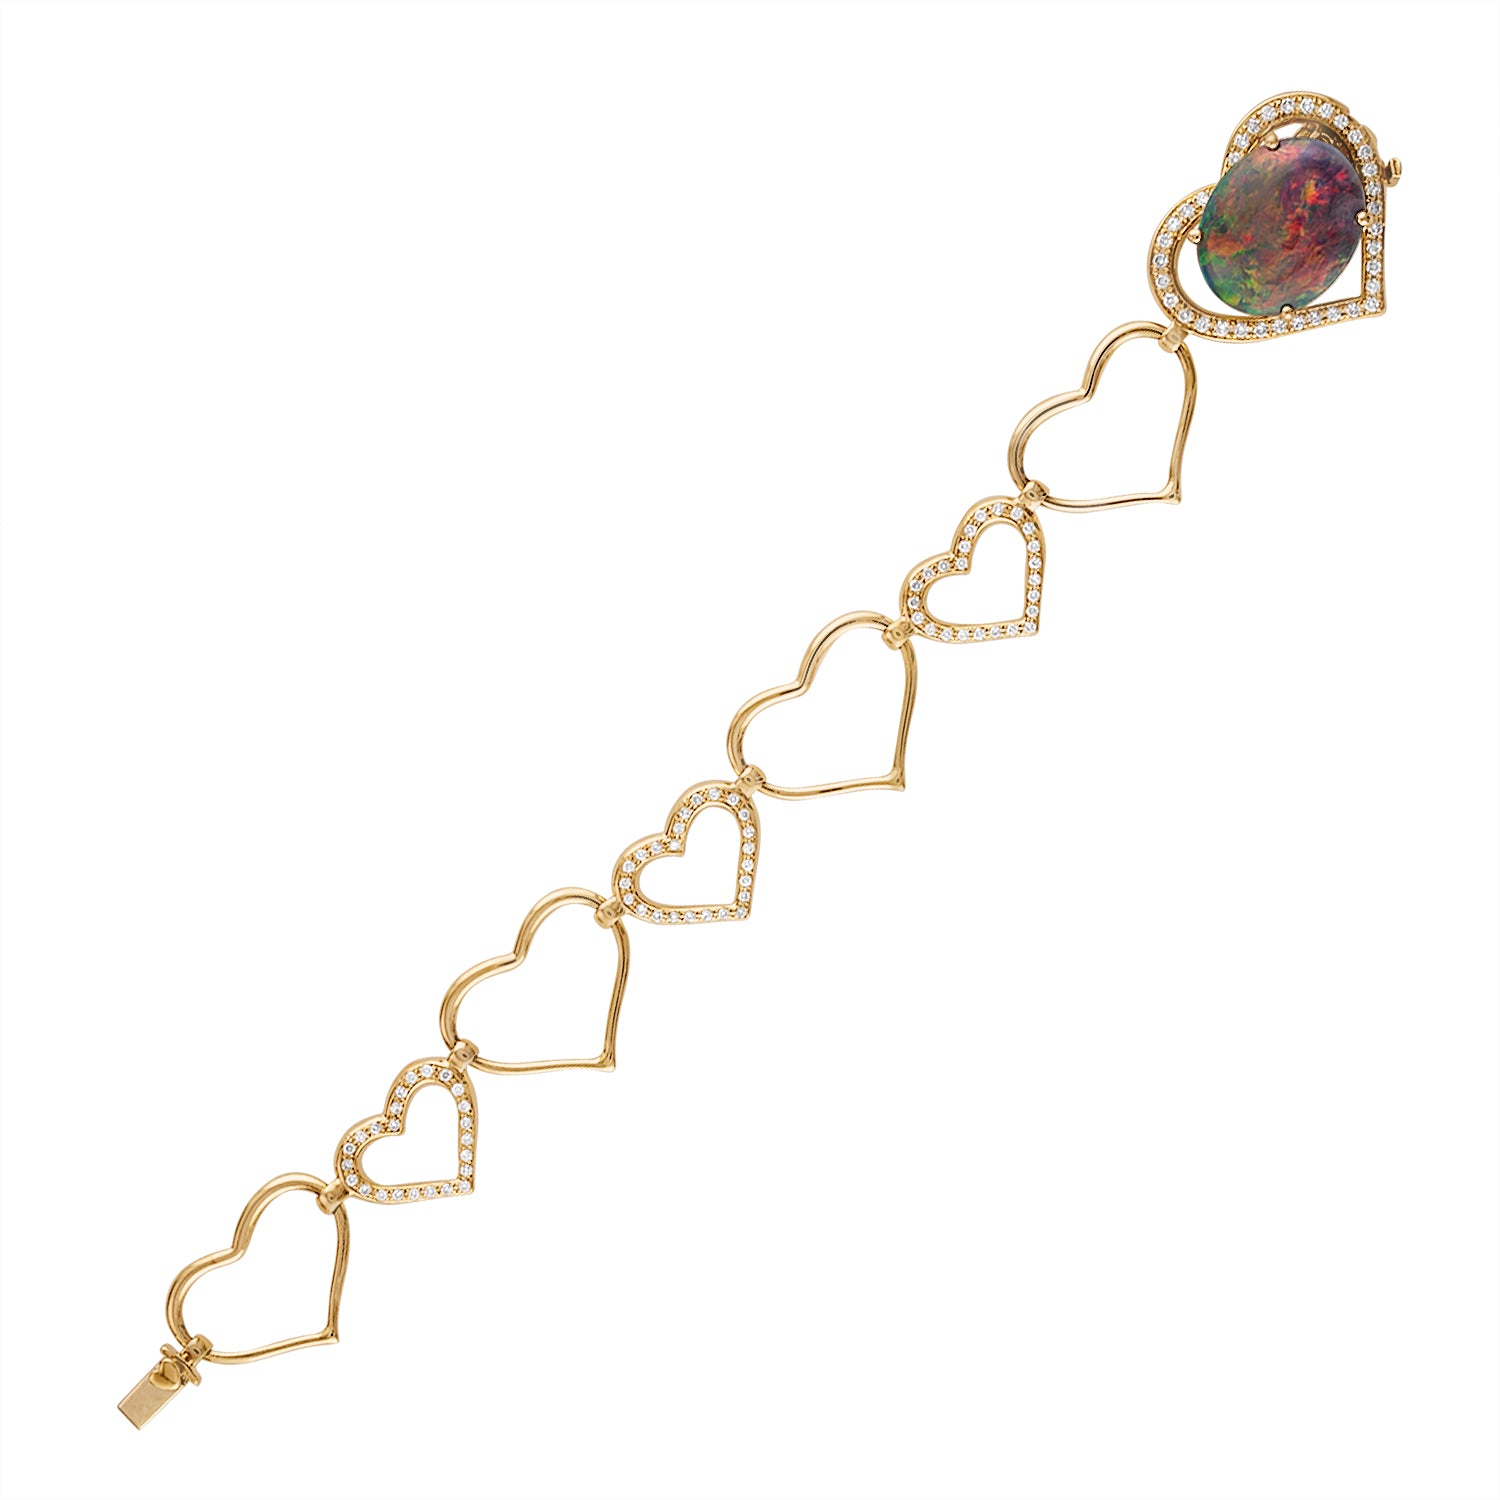 Believe in love Opal bracelet